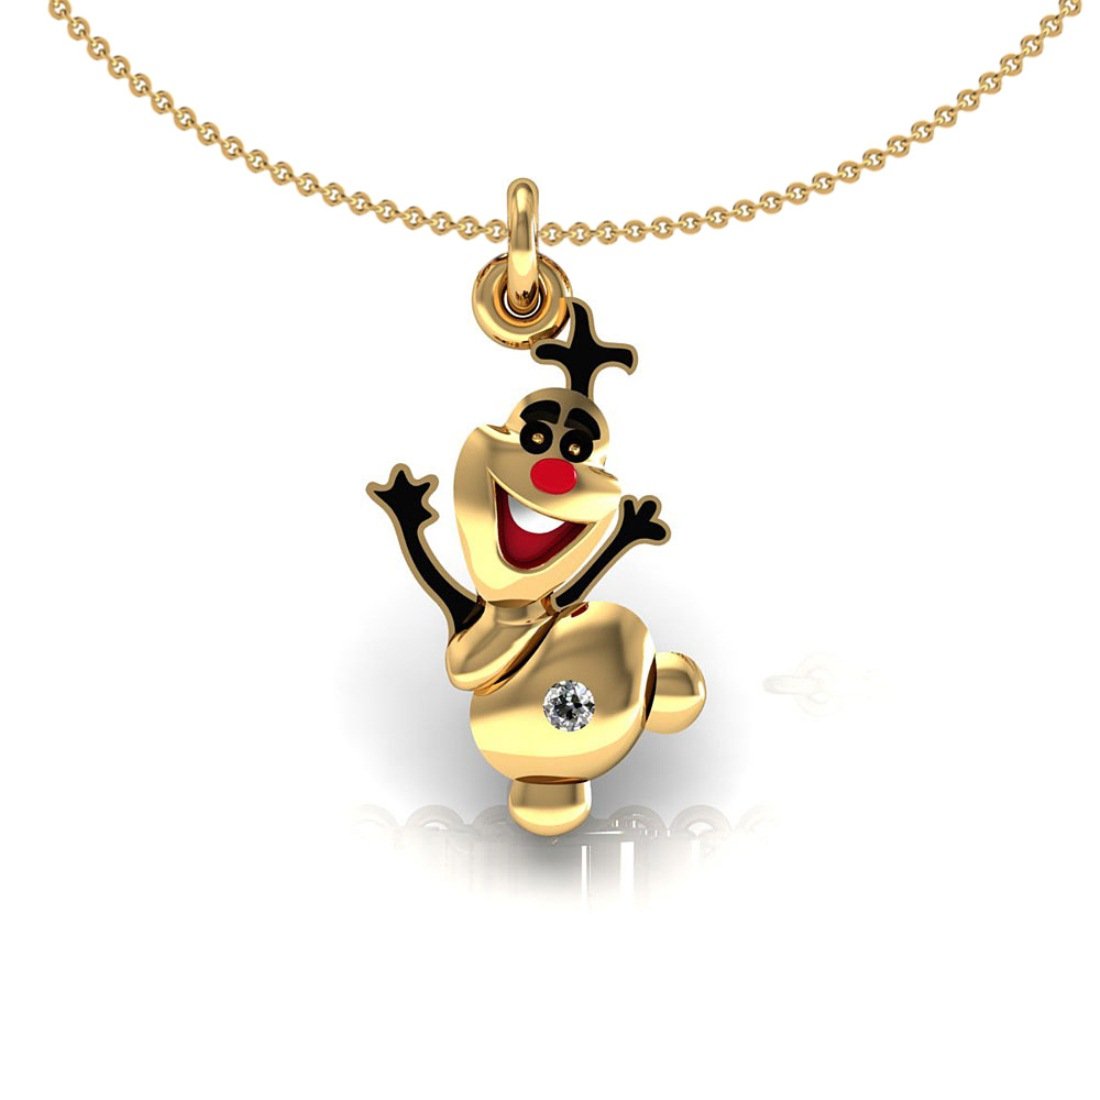 Enamel joker kids pendant with chain 18k gold diamond jewelry